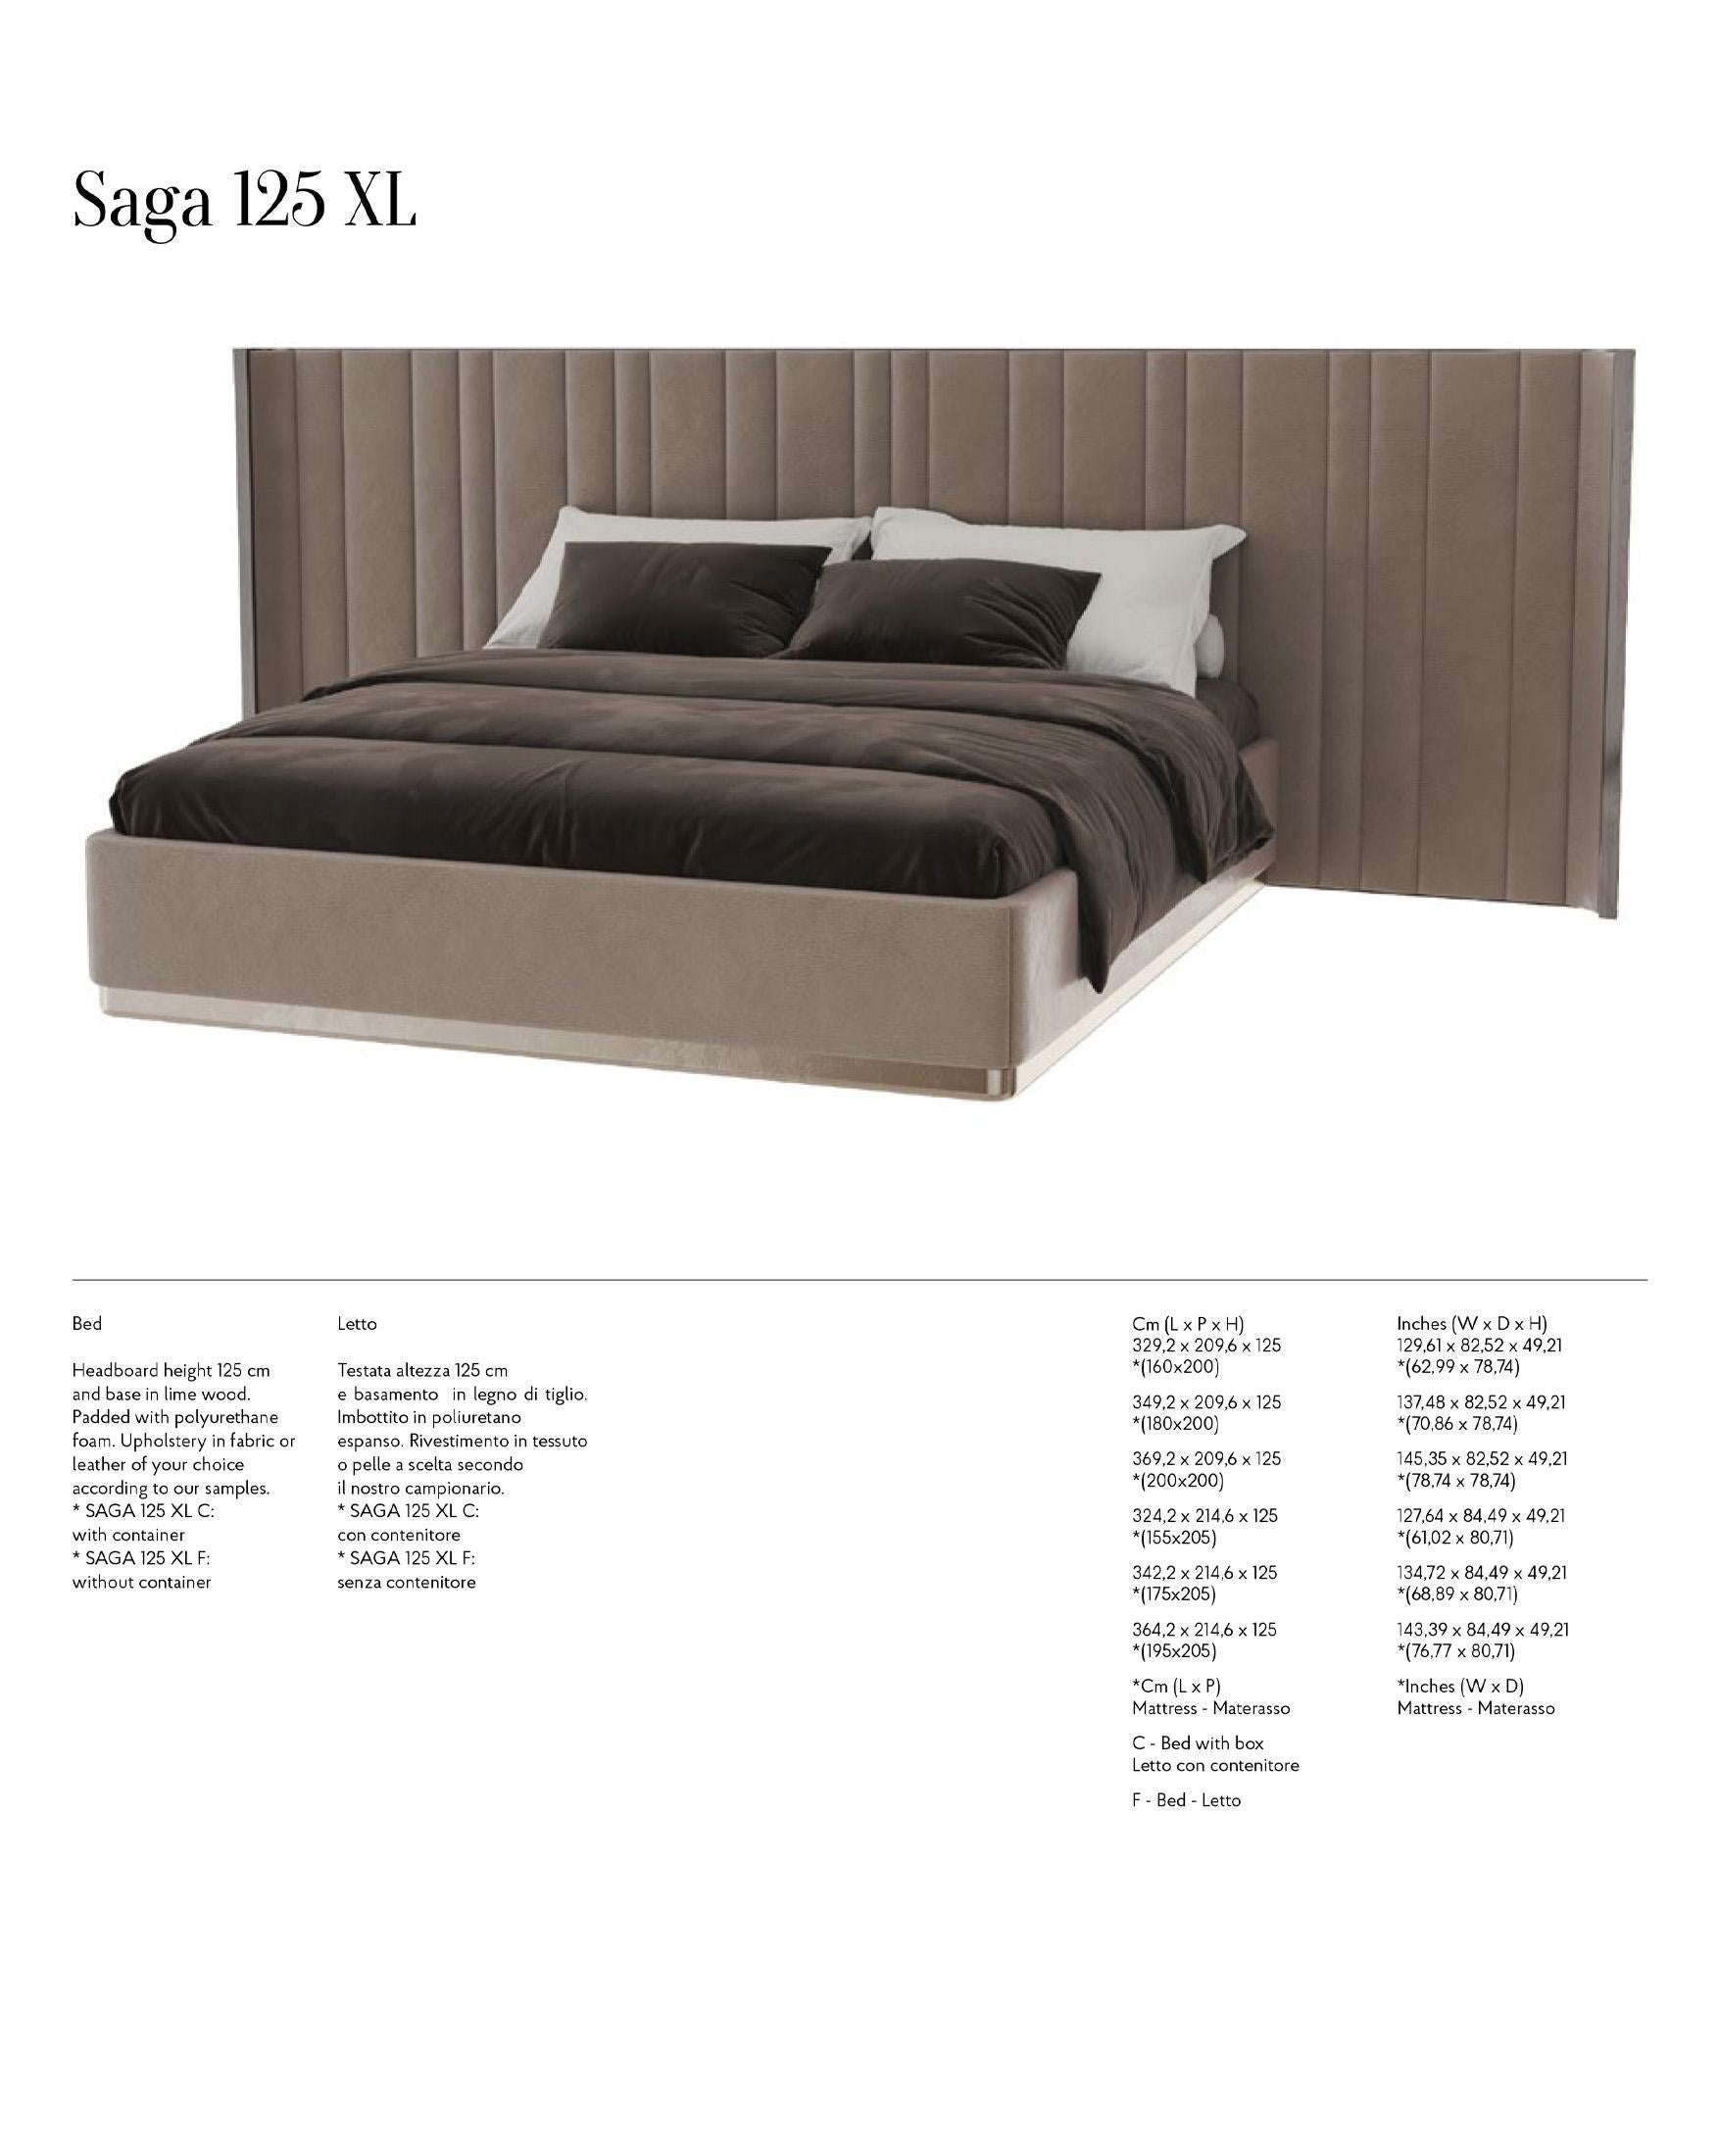 Saga 125 Italian Curved Bed Upholstered in Velvet Fabric For Sale 5